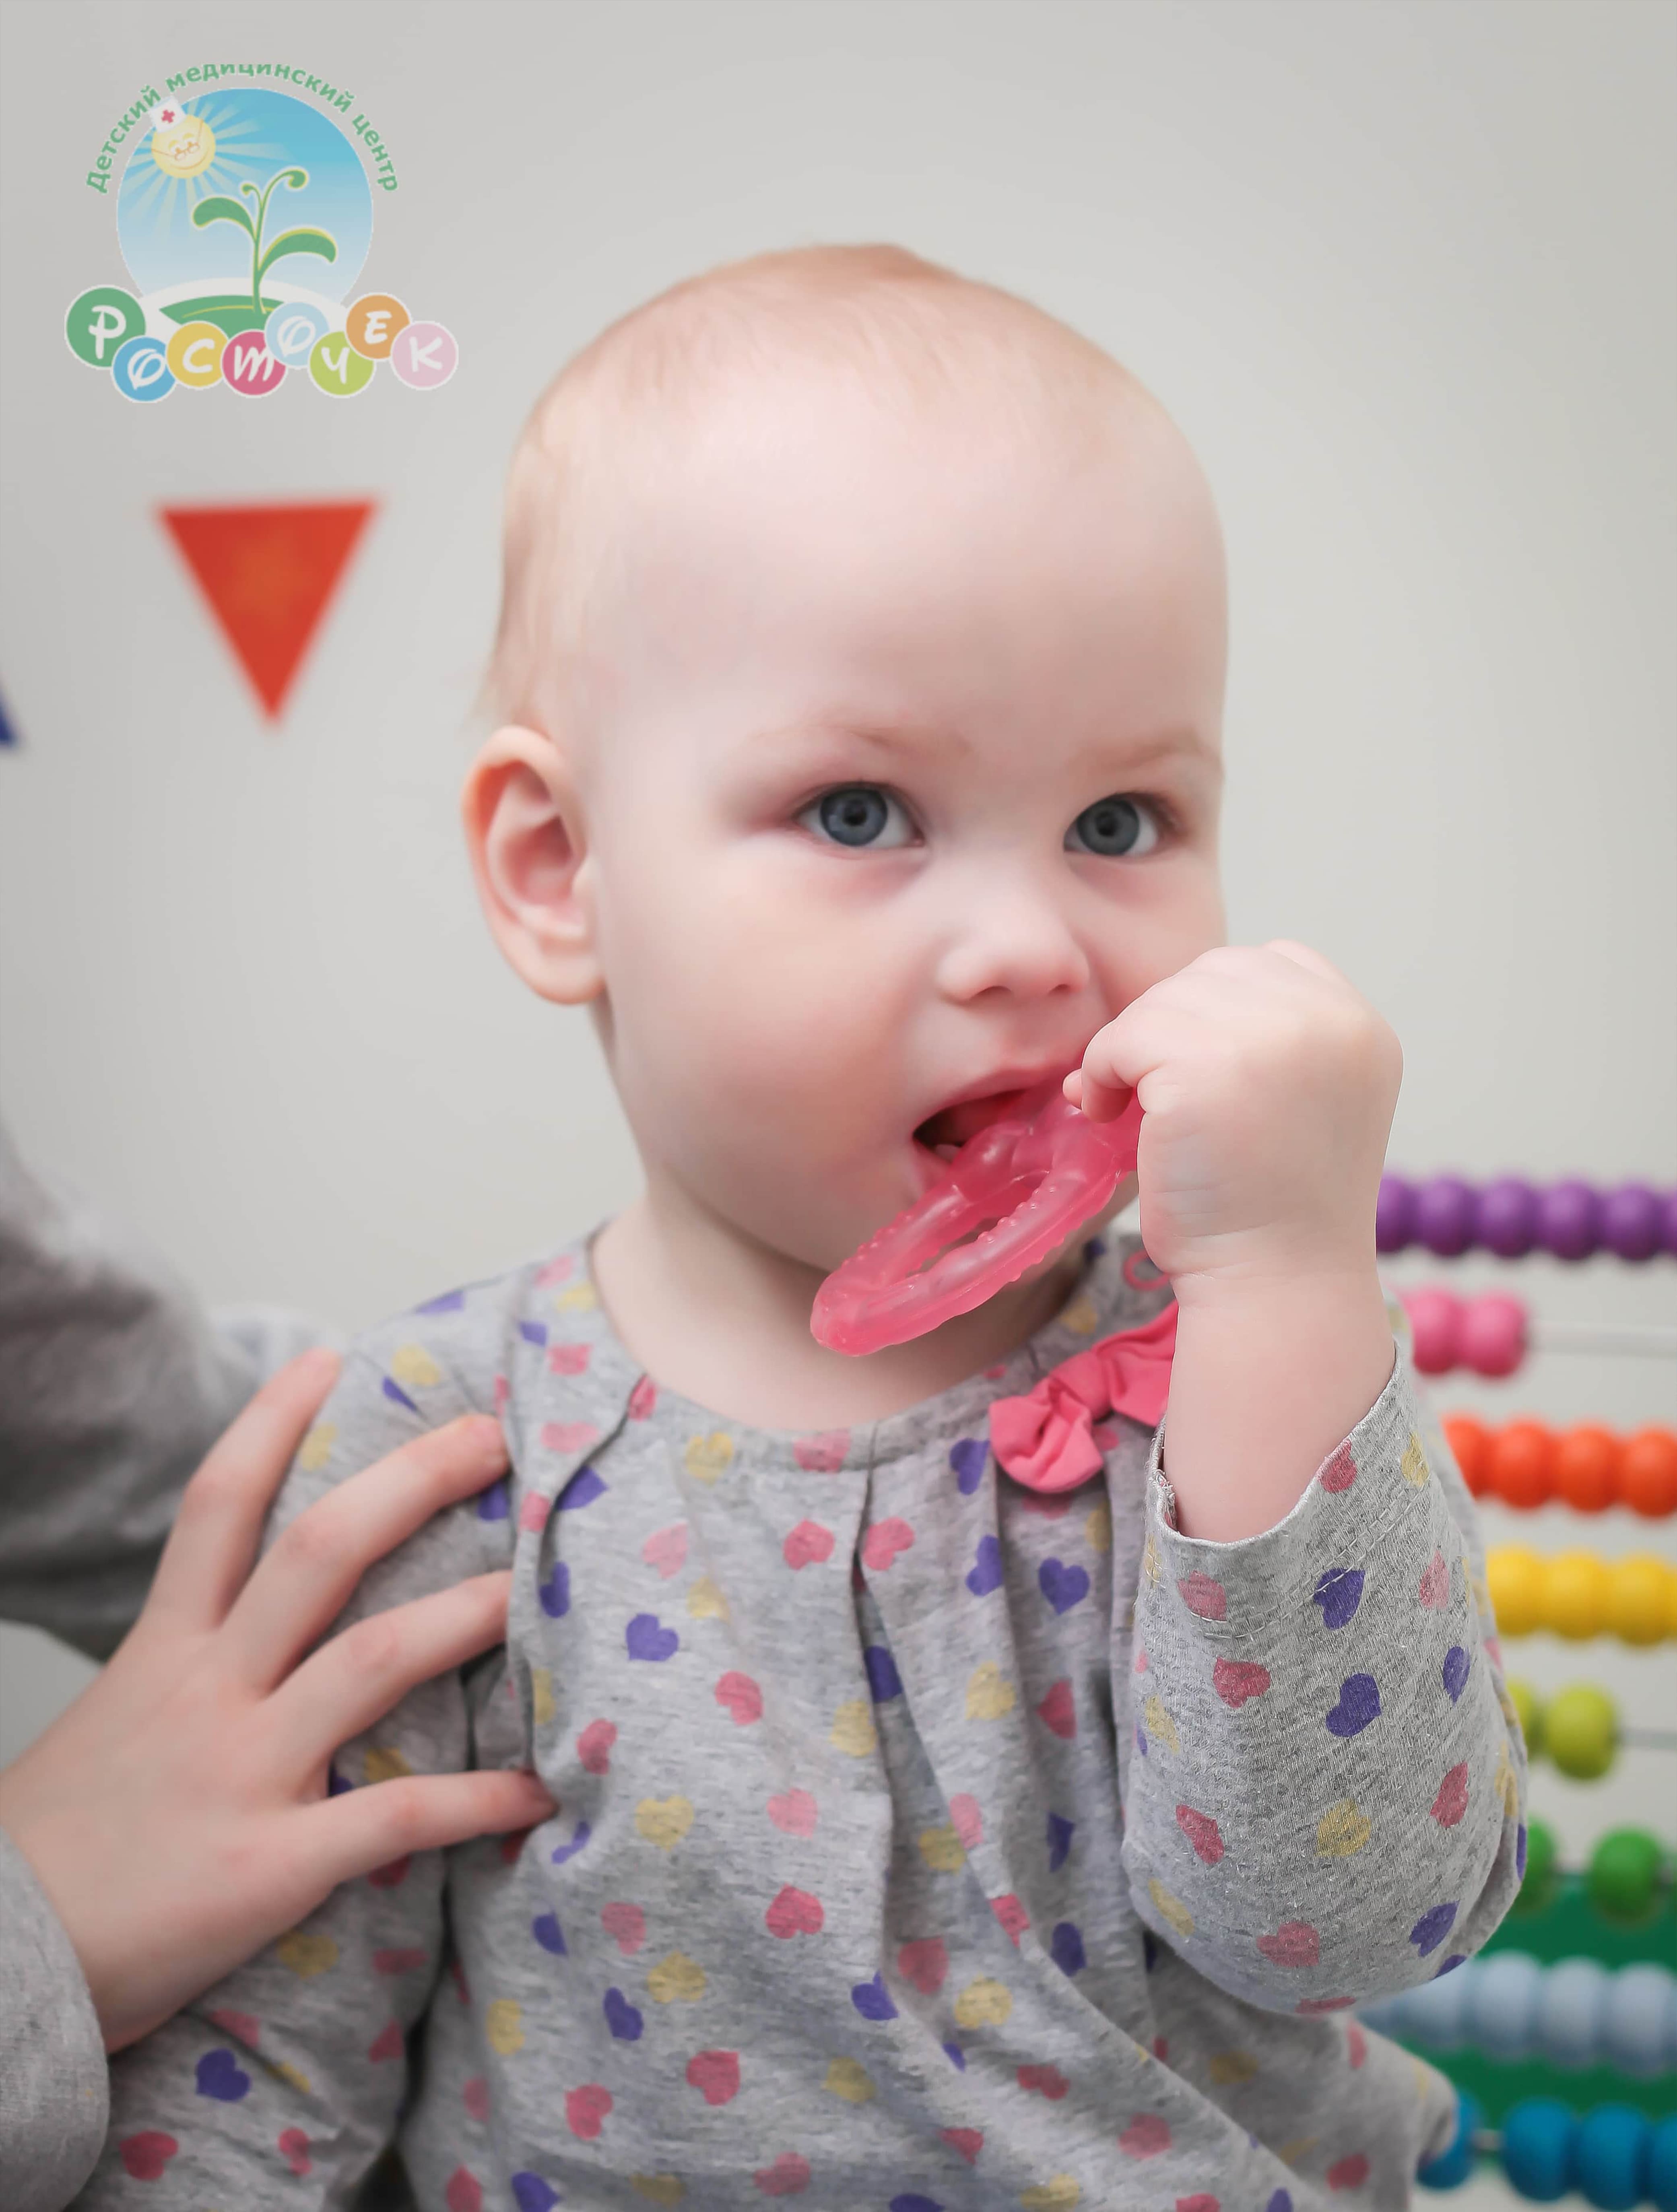 Симптомы прорезывания зубов у ребенка | Colgate